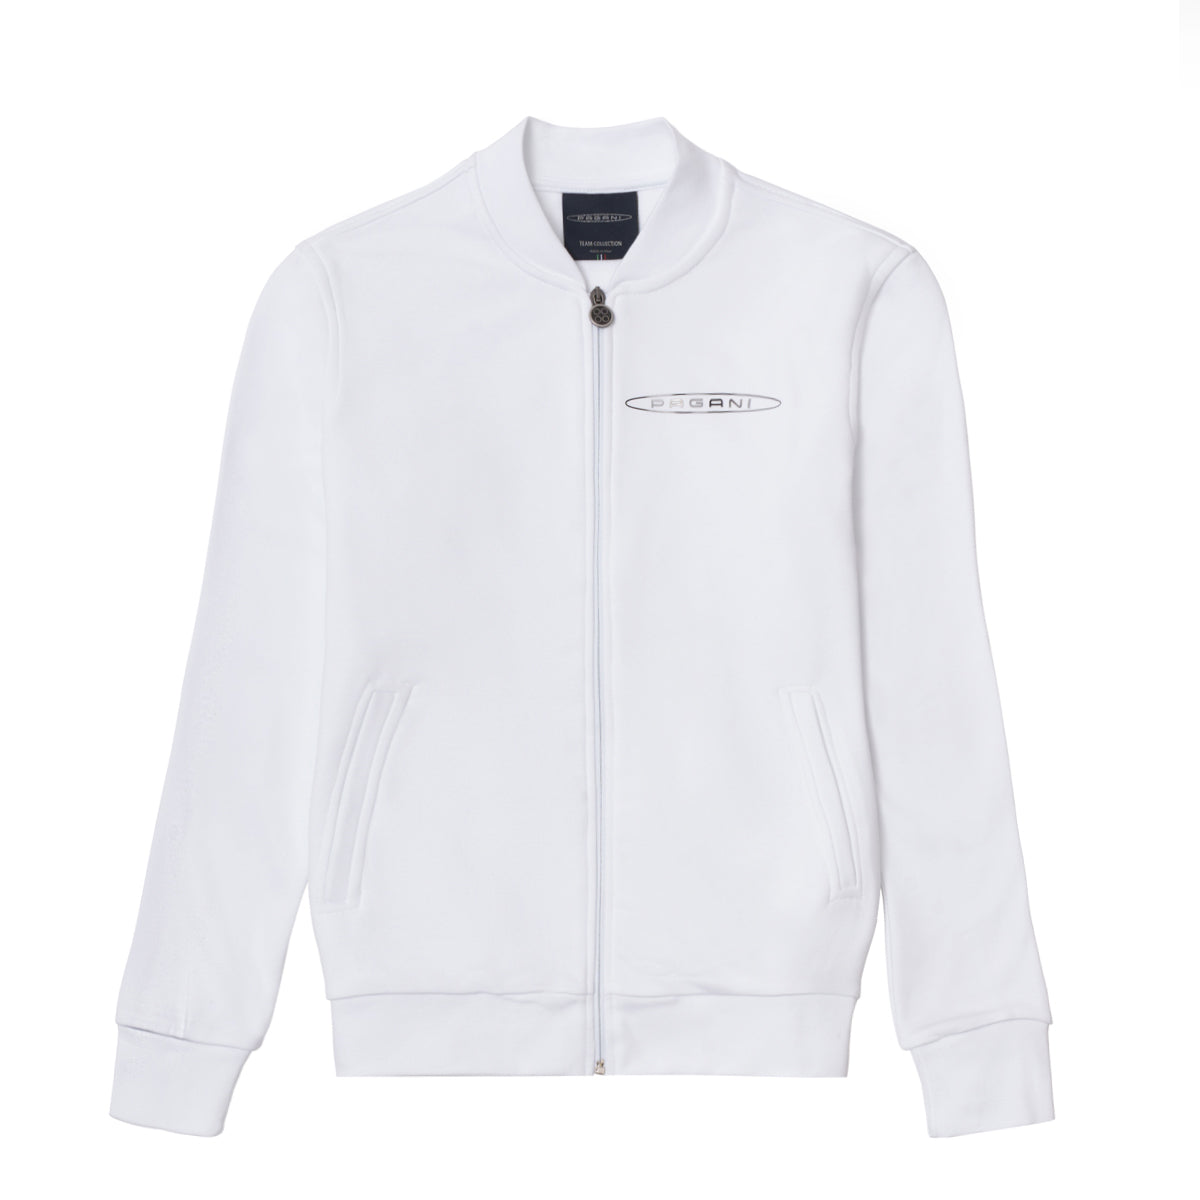 Herren-Basic-Sweatshirt Mit Durchgehendem Reissverschluss Weiß | Team Collection